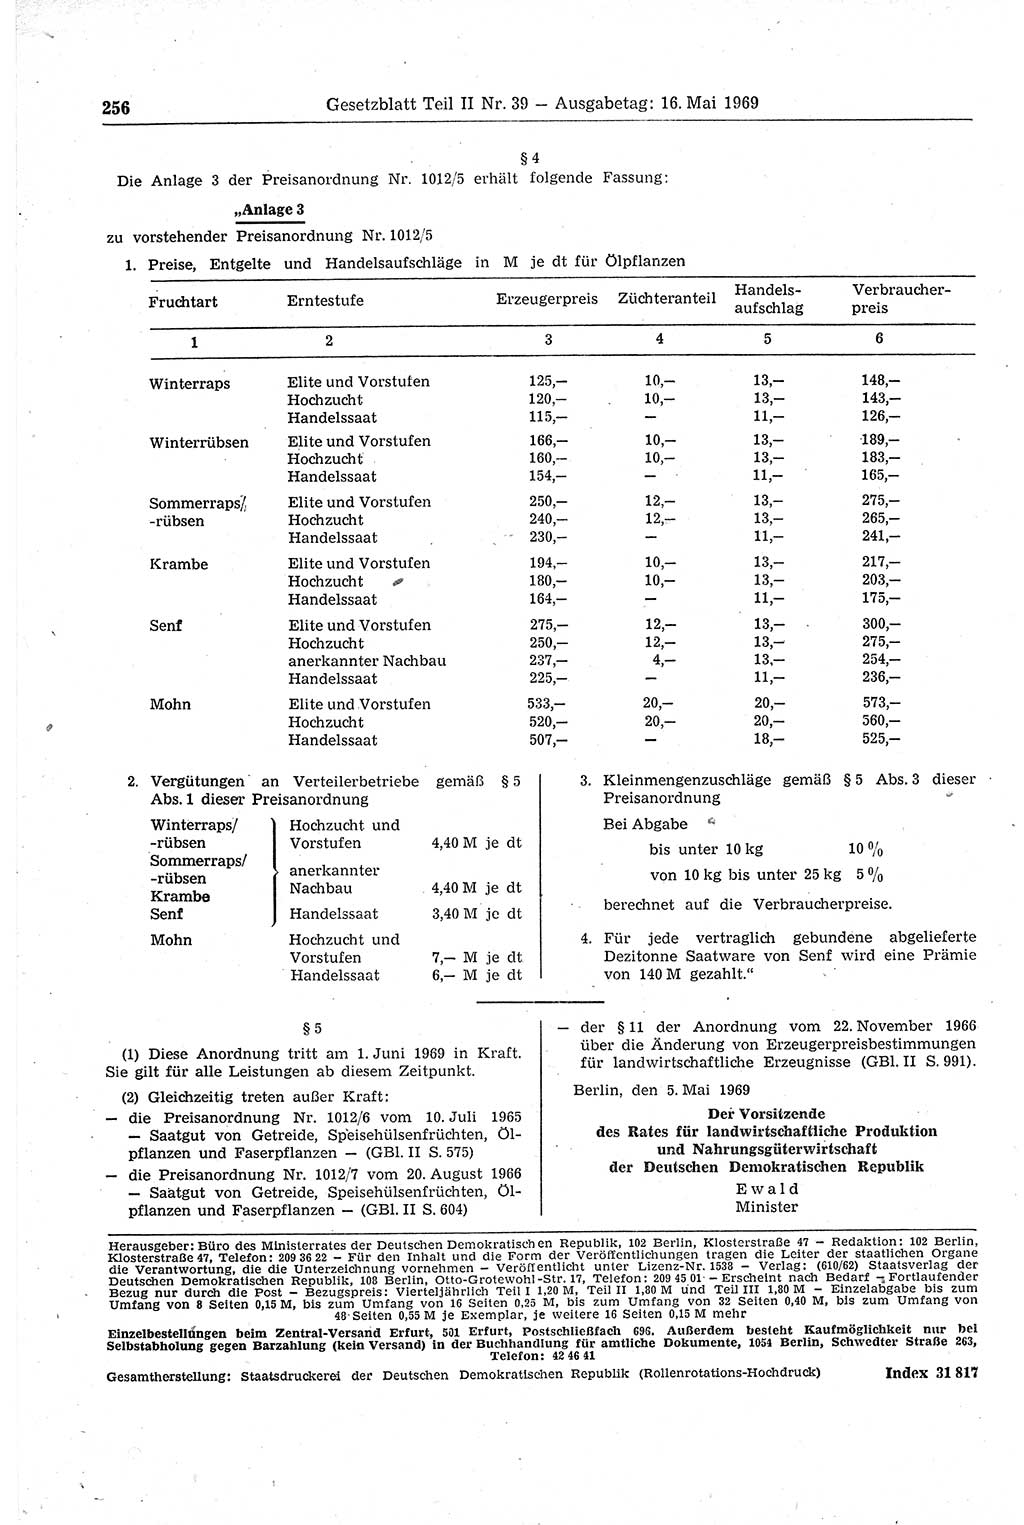 Gesetzblatt (GBl.) der Deutschen Demokratischen Republik (DDR) Teil ⅠⅠ 1969, Seite 256 (GBl. DDR ⅠⅠ 1969, S. 256)